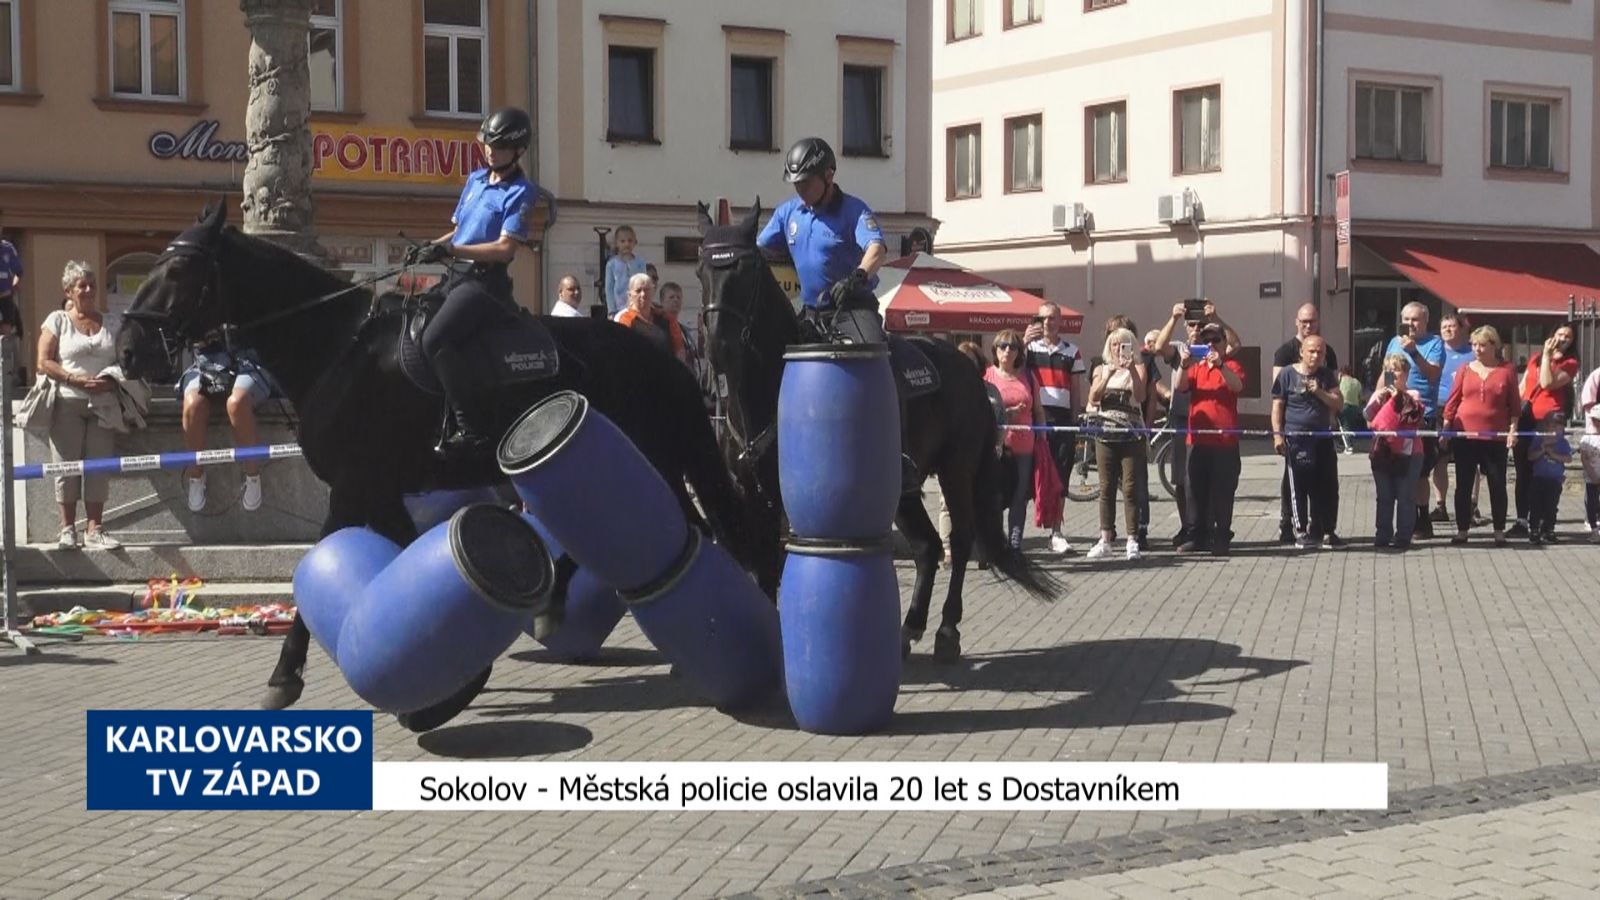 Sokolov: Městská policie oslavila 20 let s Dostavníkem (TV Západ)